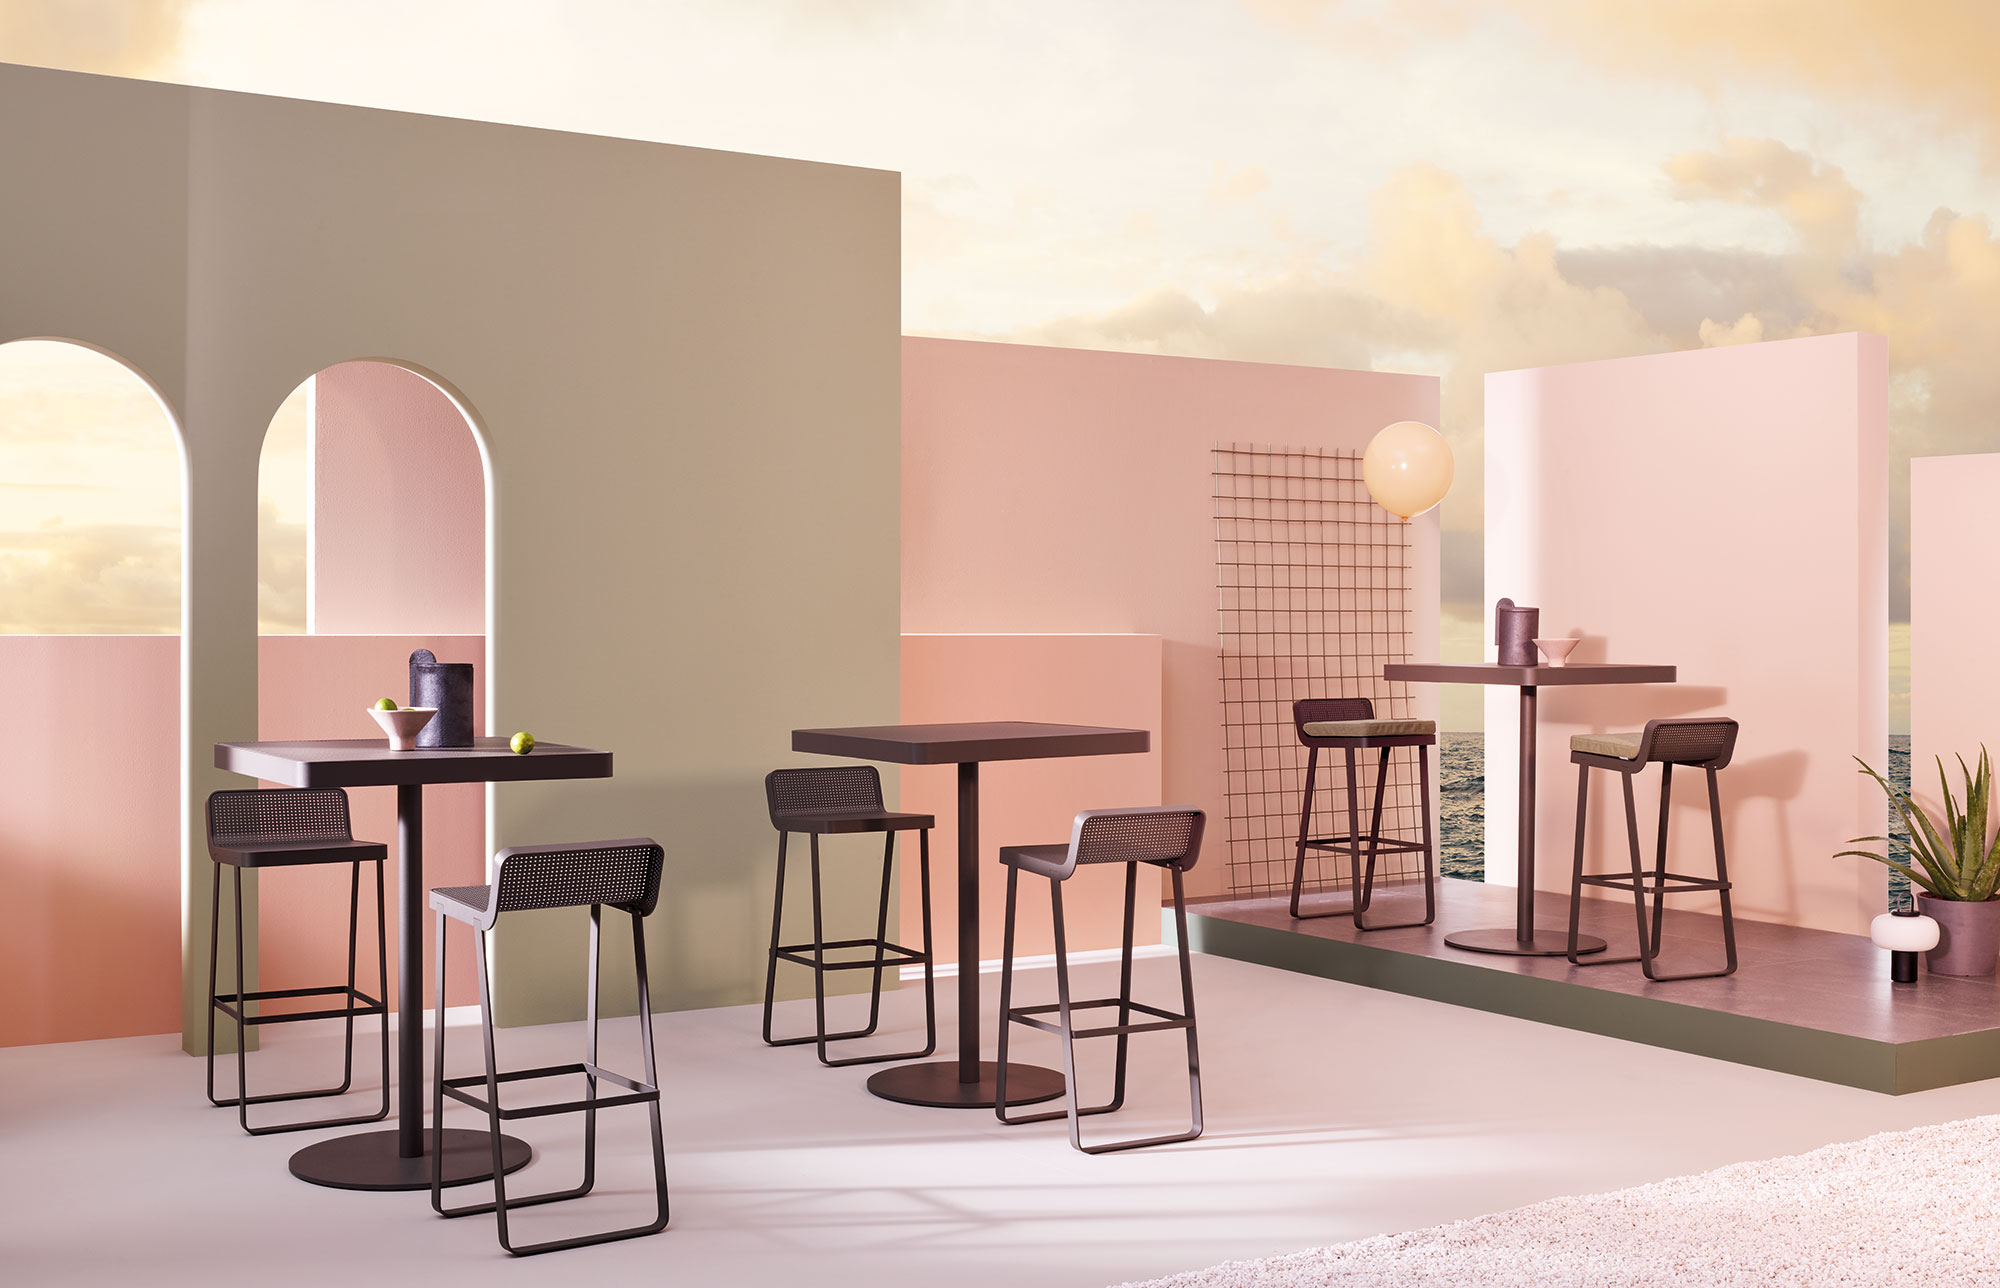 Sgabello e Tavolo Makemake, sgabello e tavolo da esterno/Makemake Stool and Bar Table, outdoor stool and bar table